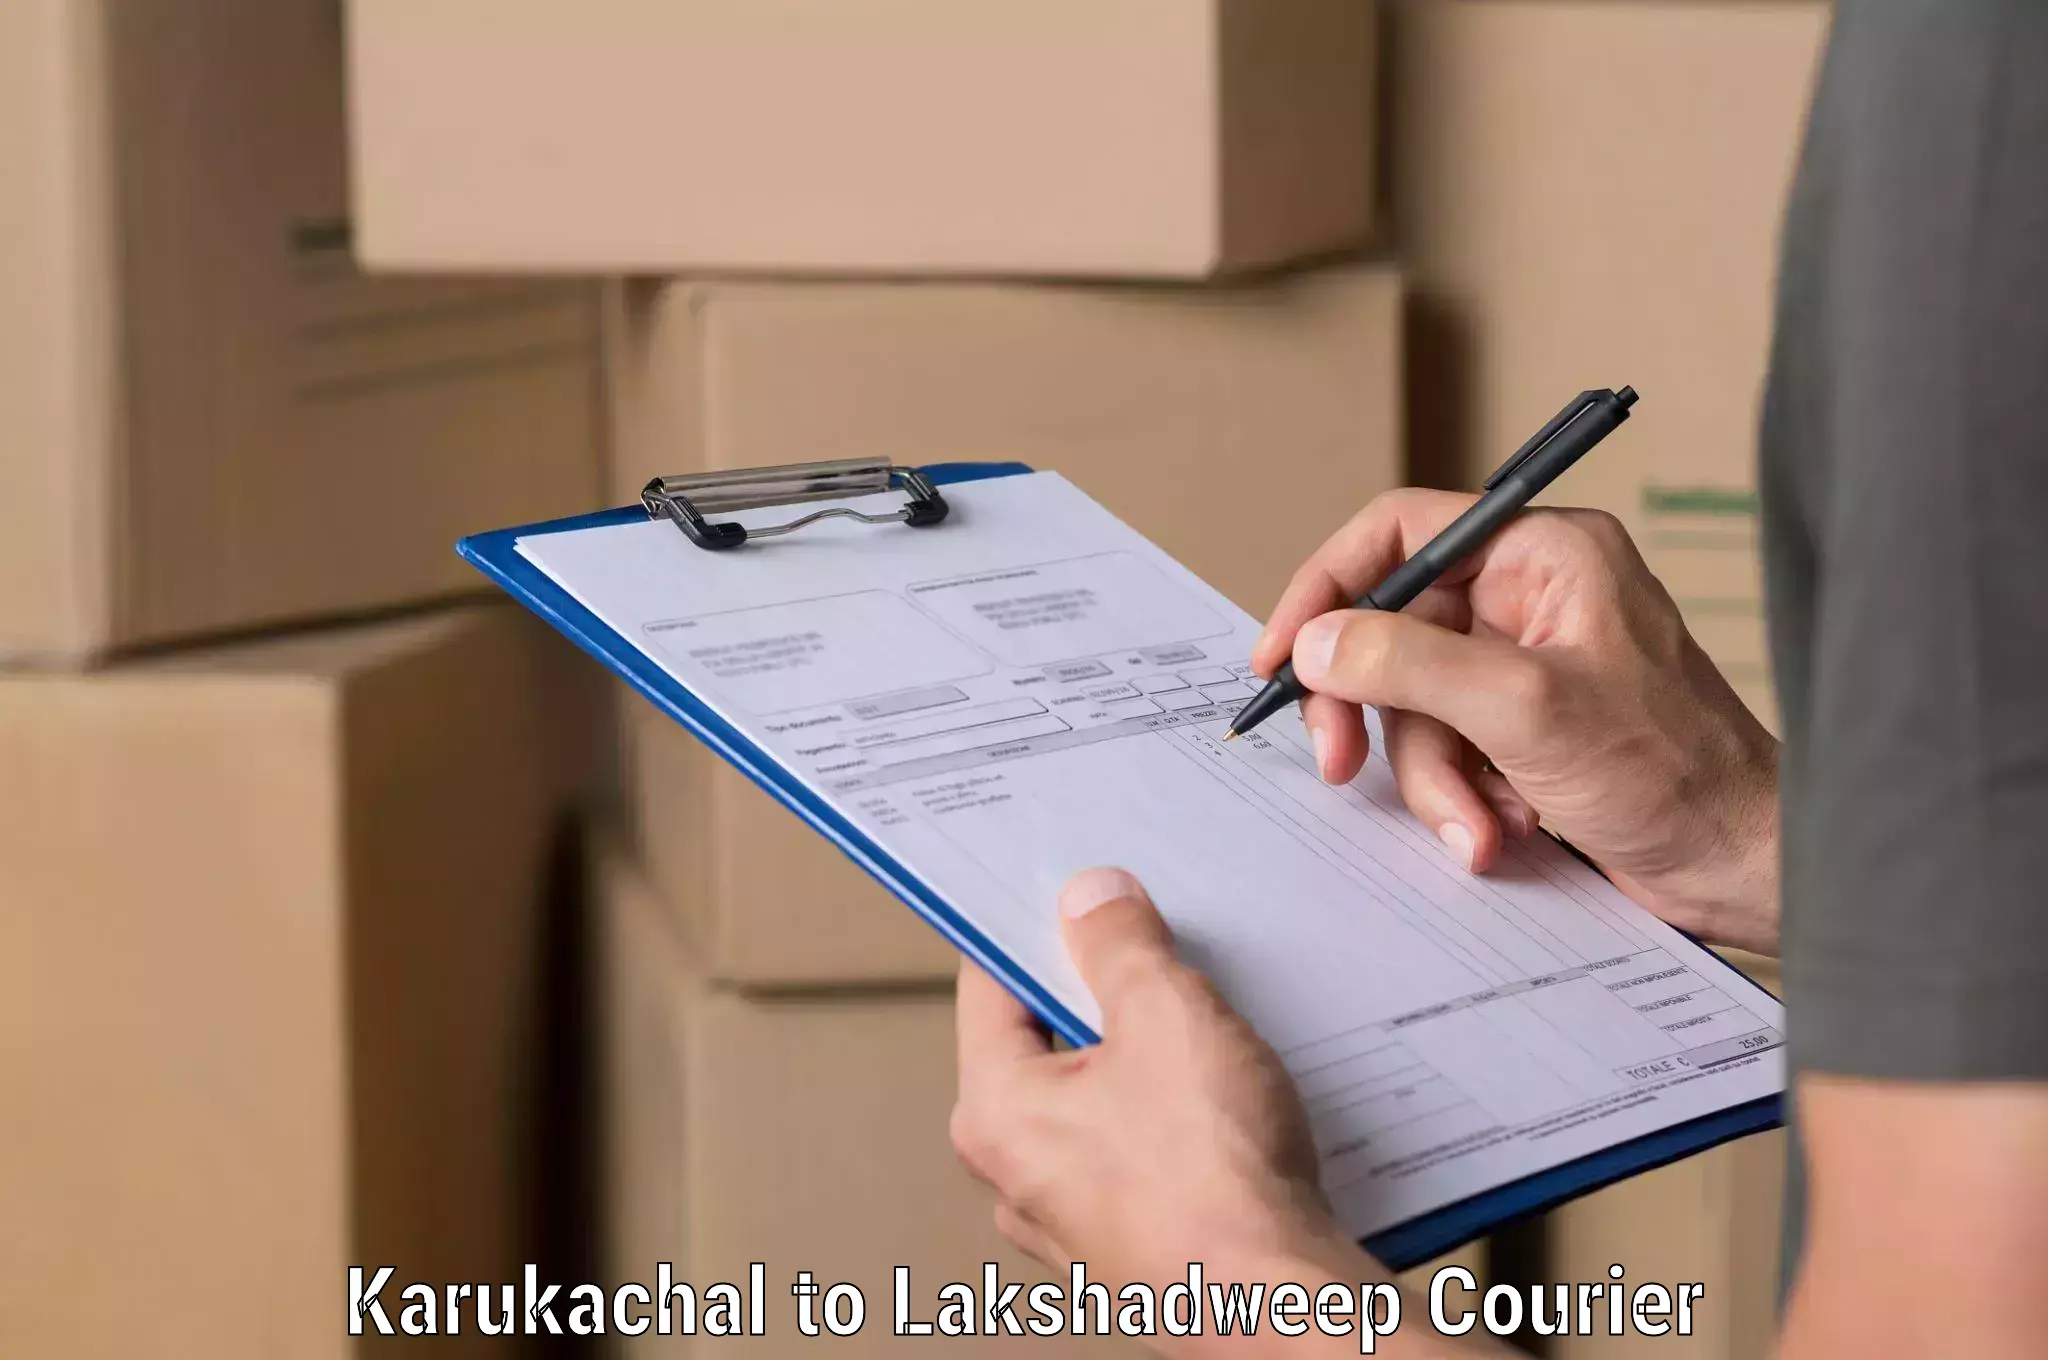 Online package tracking Karukachal to Lakshadweep